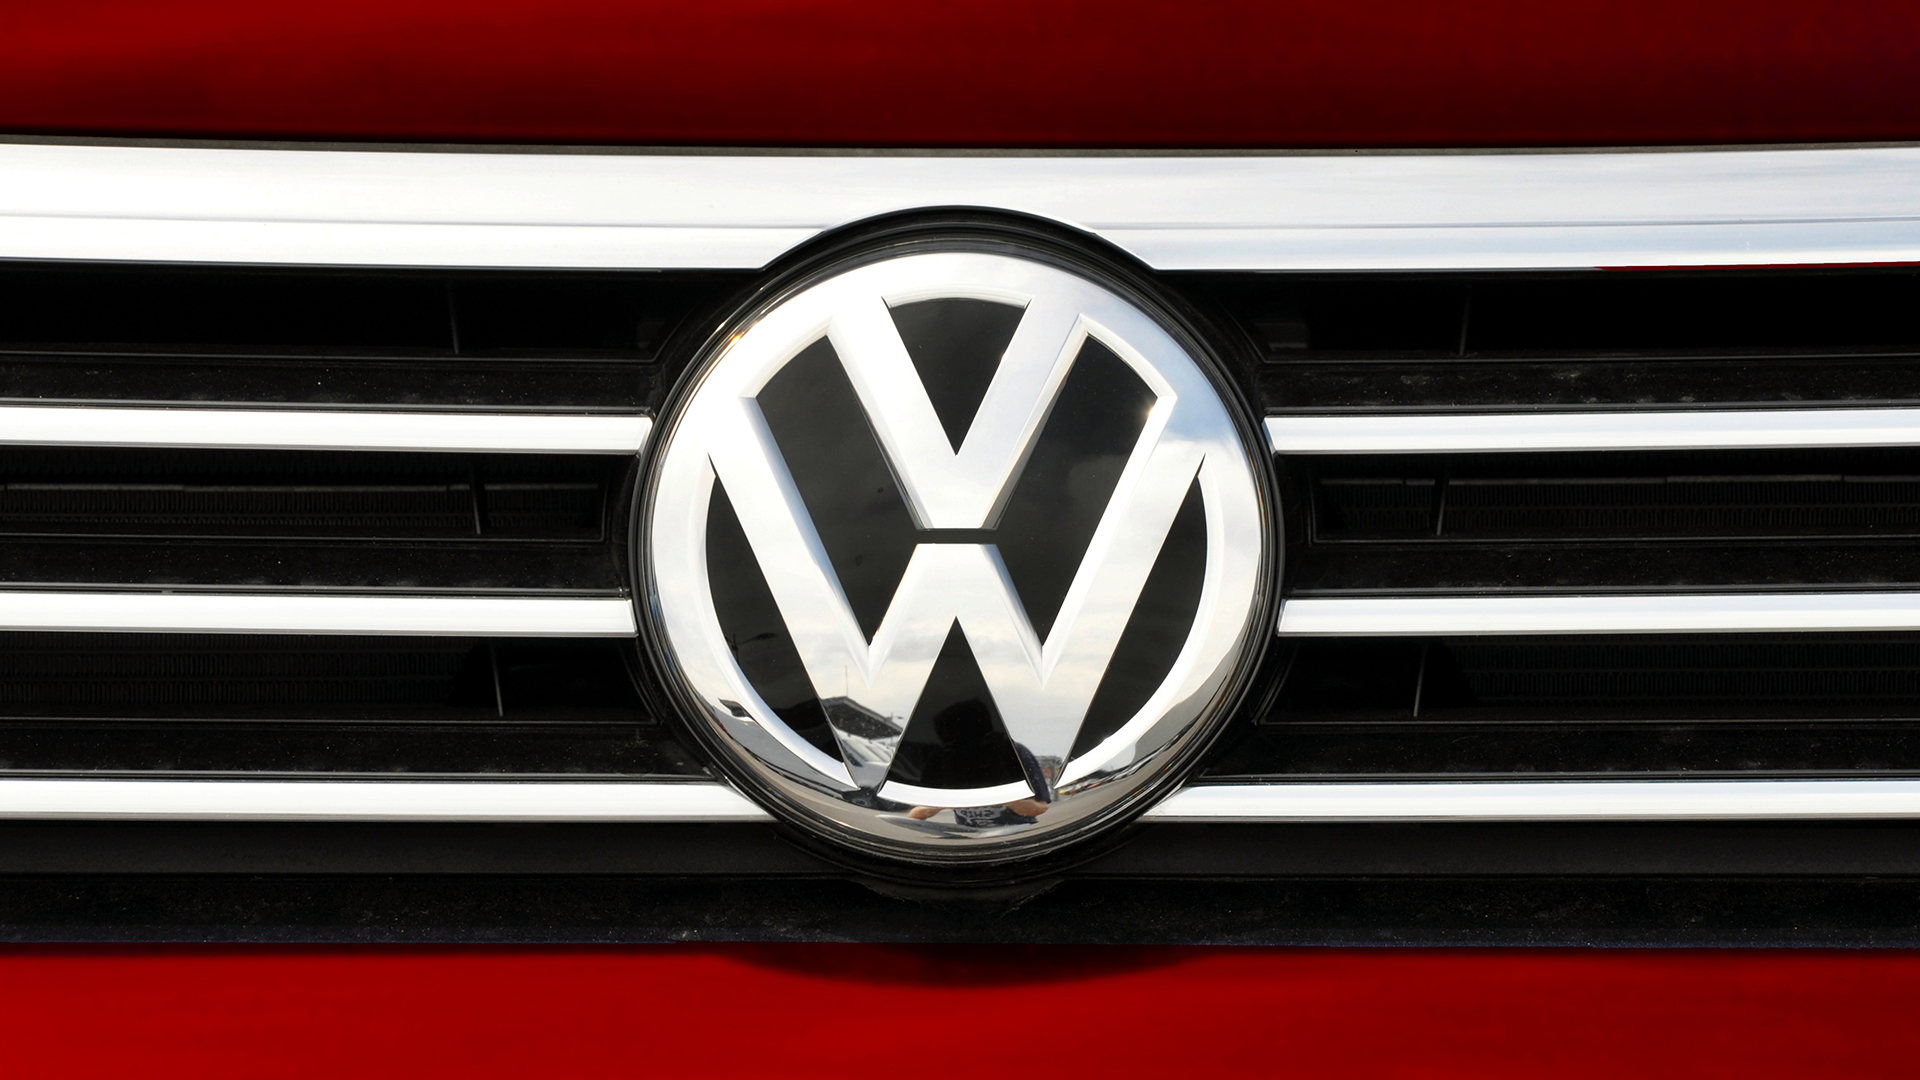 Nach Abschwung bei Autoaktien: Darum könnten Volkswagen und Co im zweiten Halbjahr richtig aufdrehen (Foto: Tadeas Skuhra/Shutterstock)